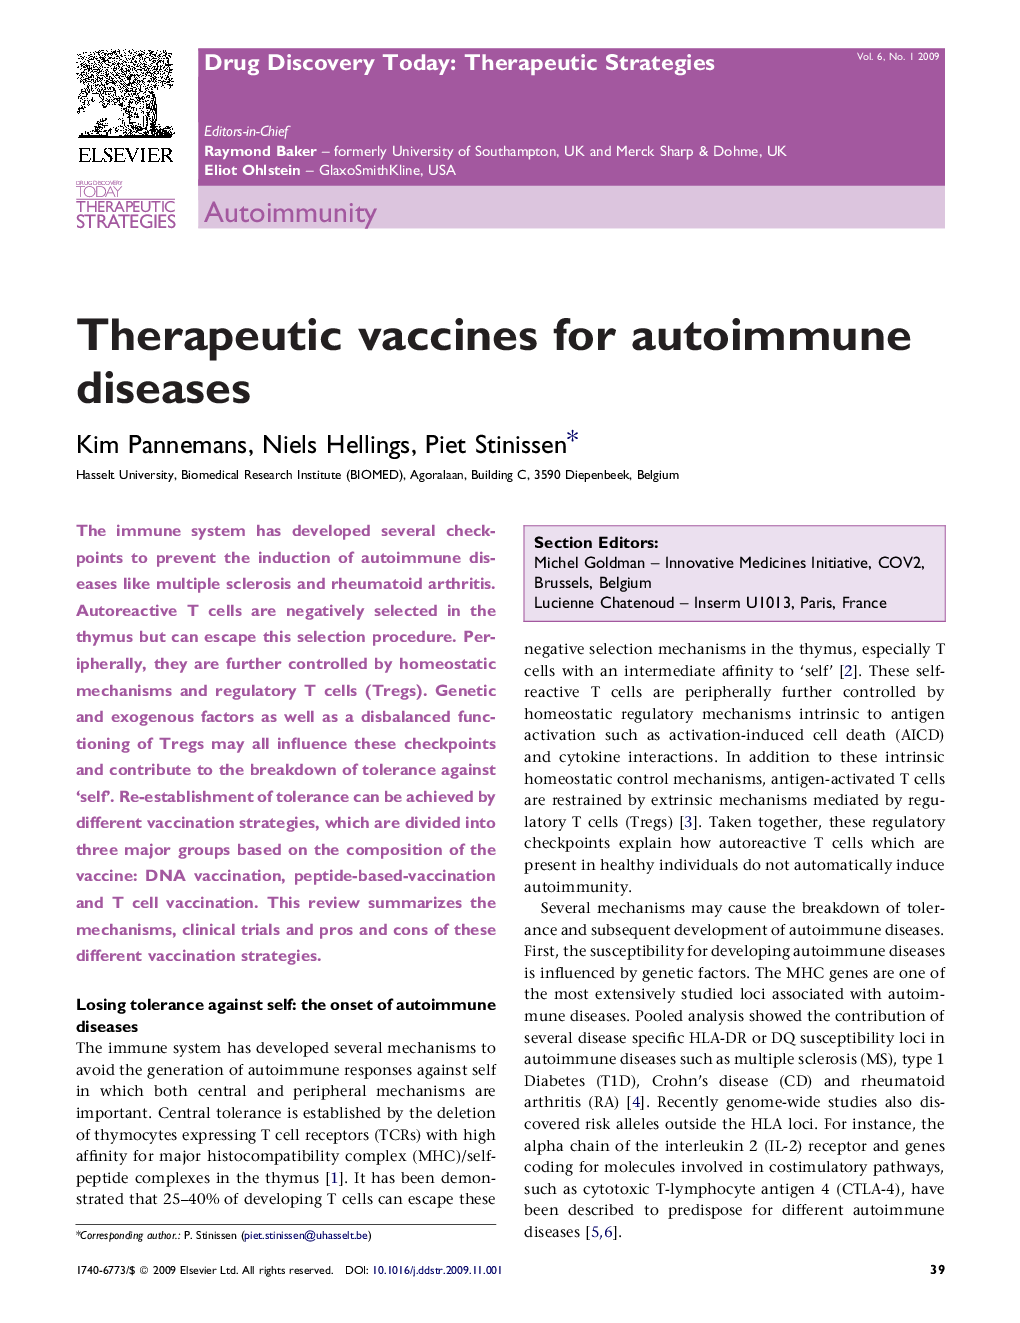 Therapeutic vaccines for autoimmune diseases